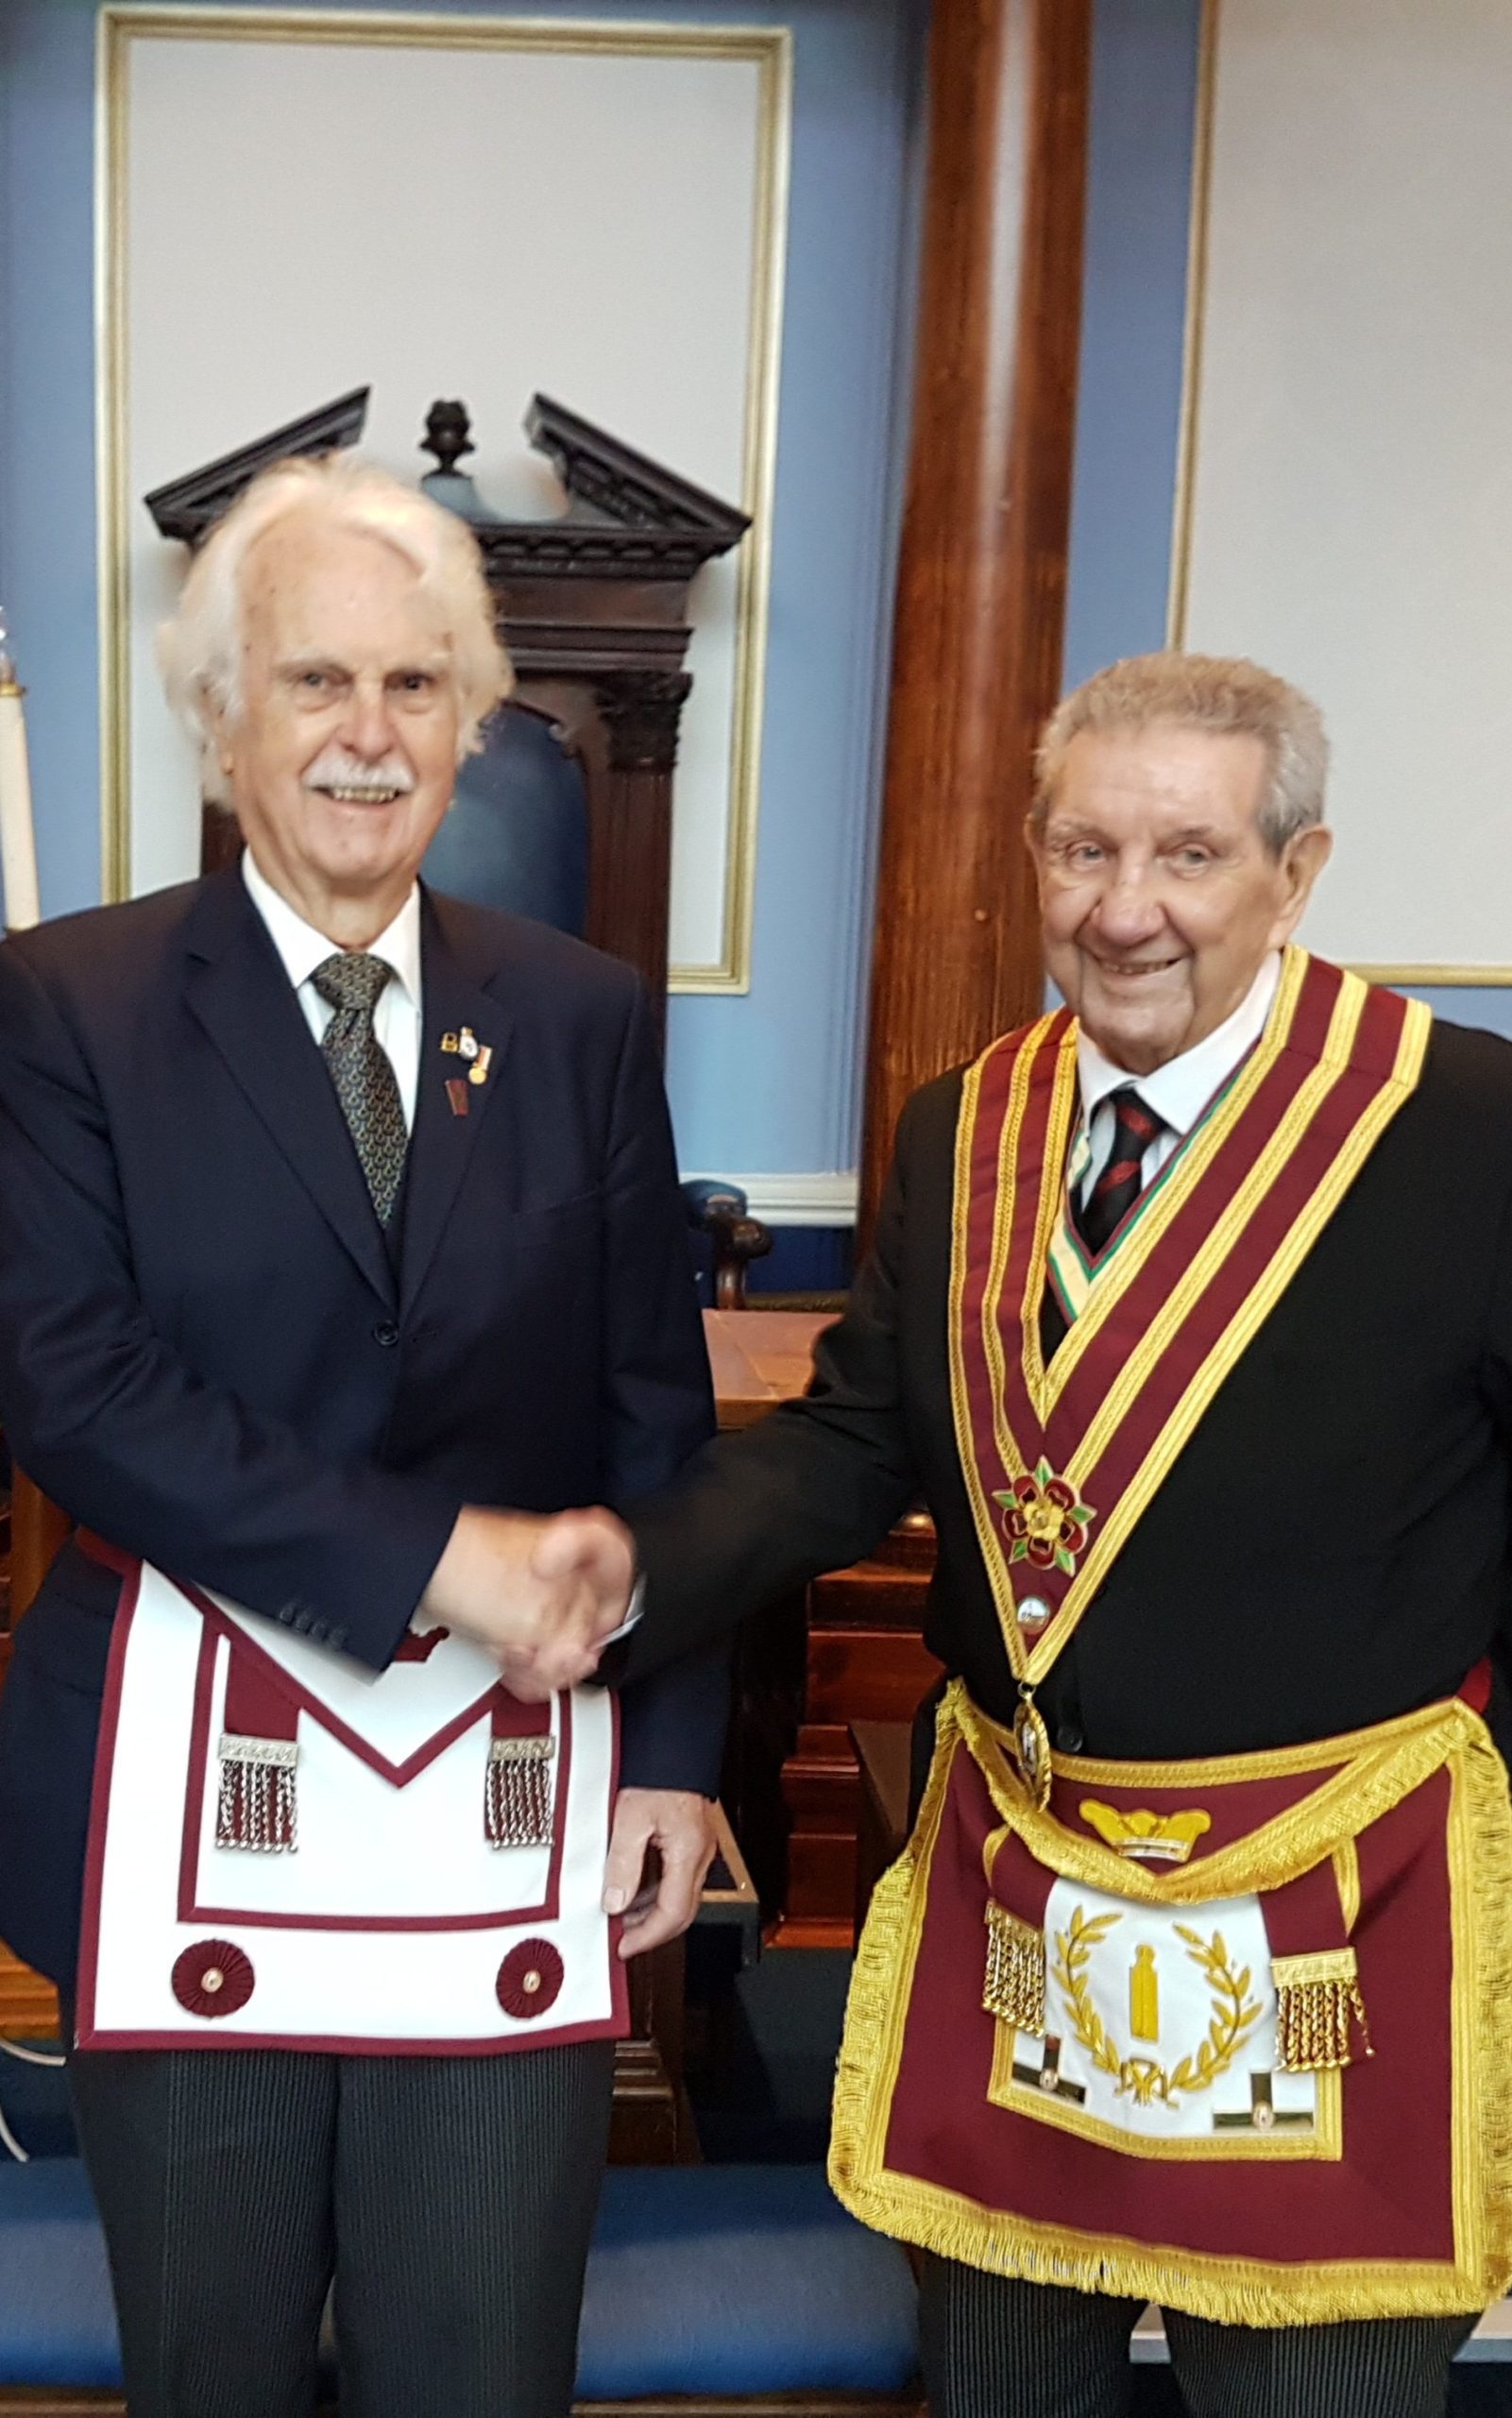 R W Bro Mervyn Western welcomes Bro Ernest Niel into the Order